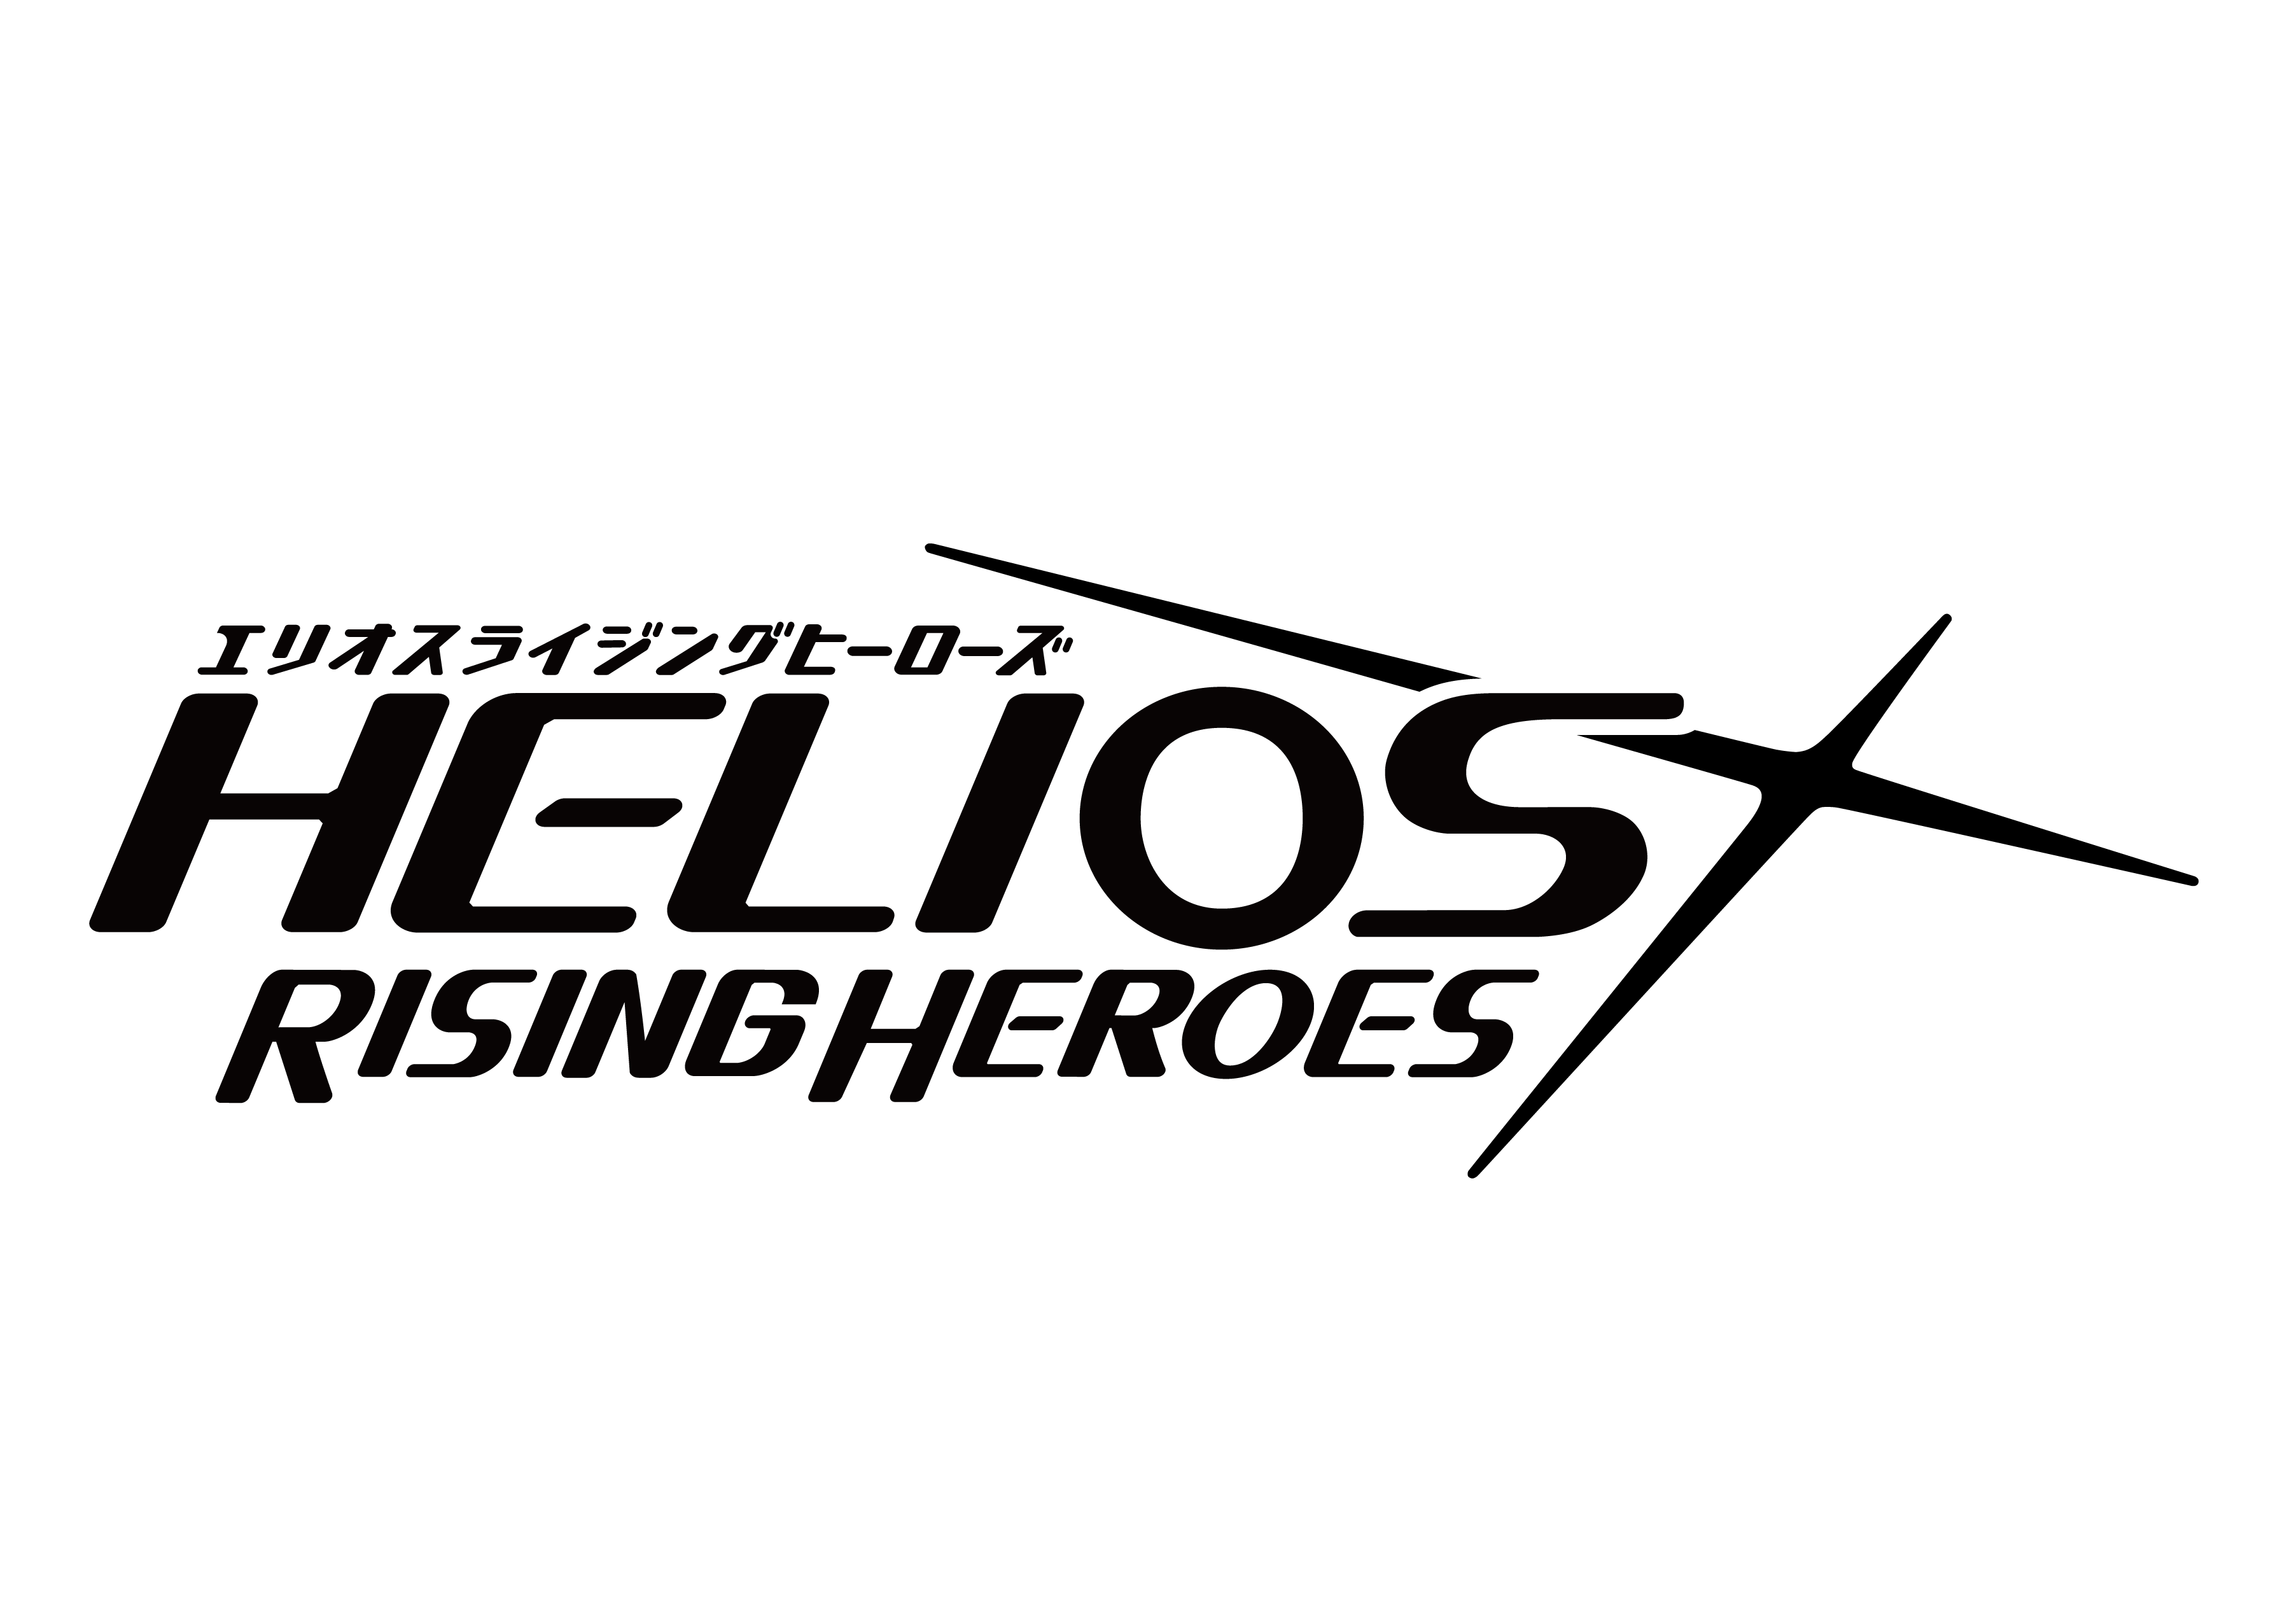 「エリオスライジングヒーローズ」ロゴ